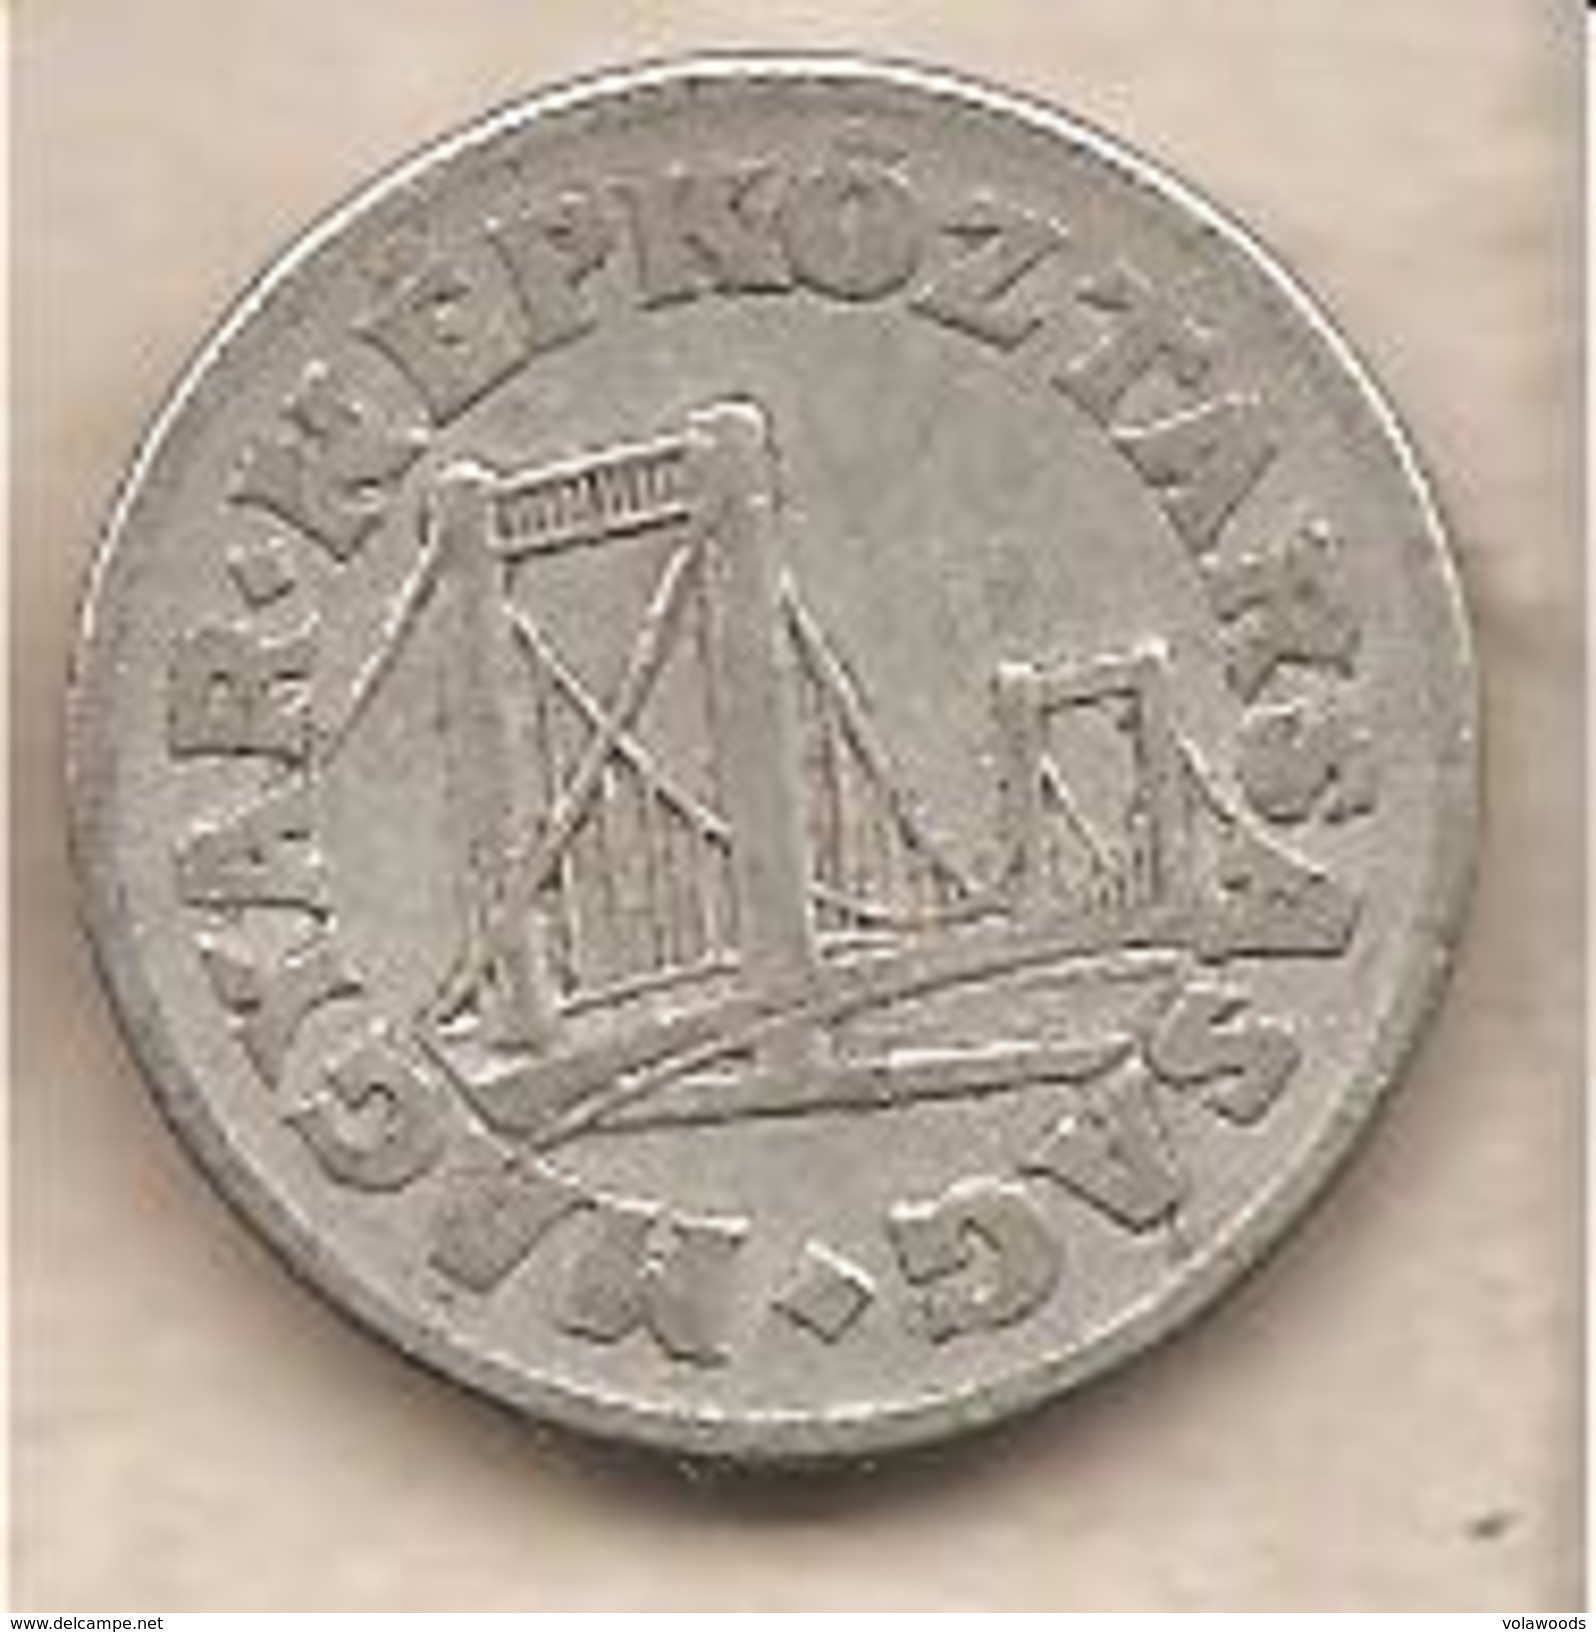 Ungheria - Moneta Circolata Da 50 Filler - 1967 - Hungary